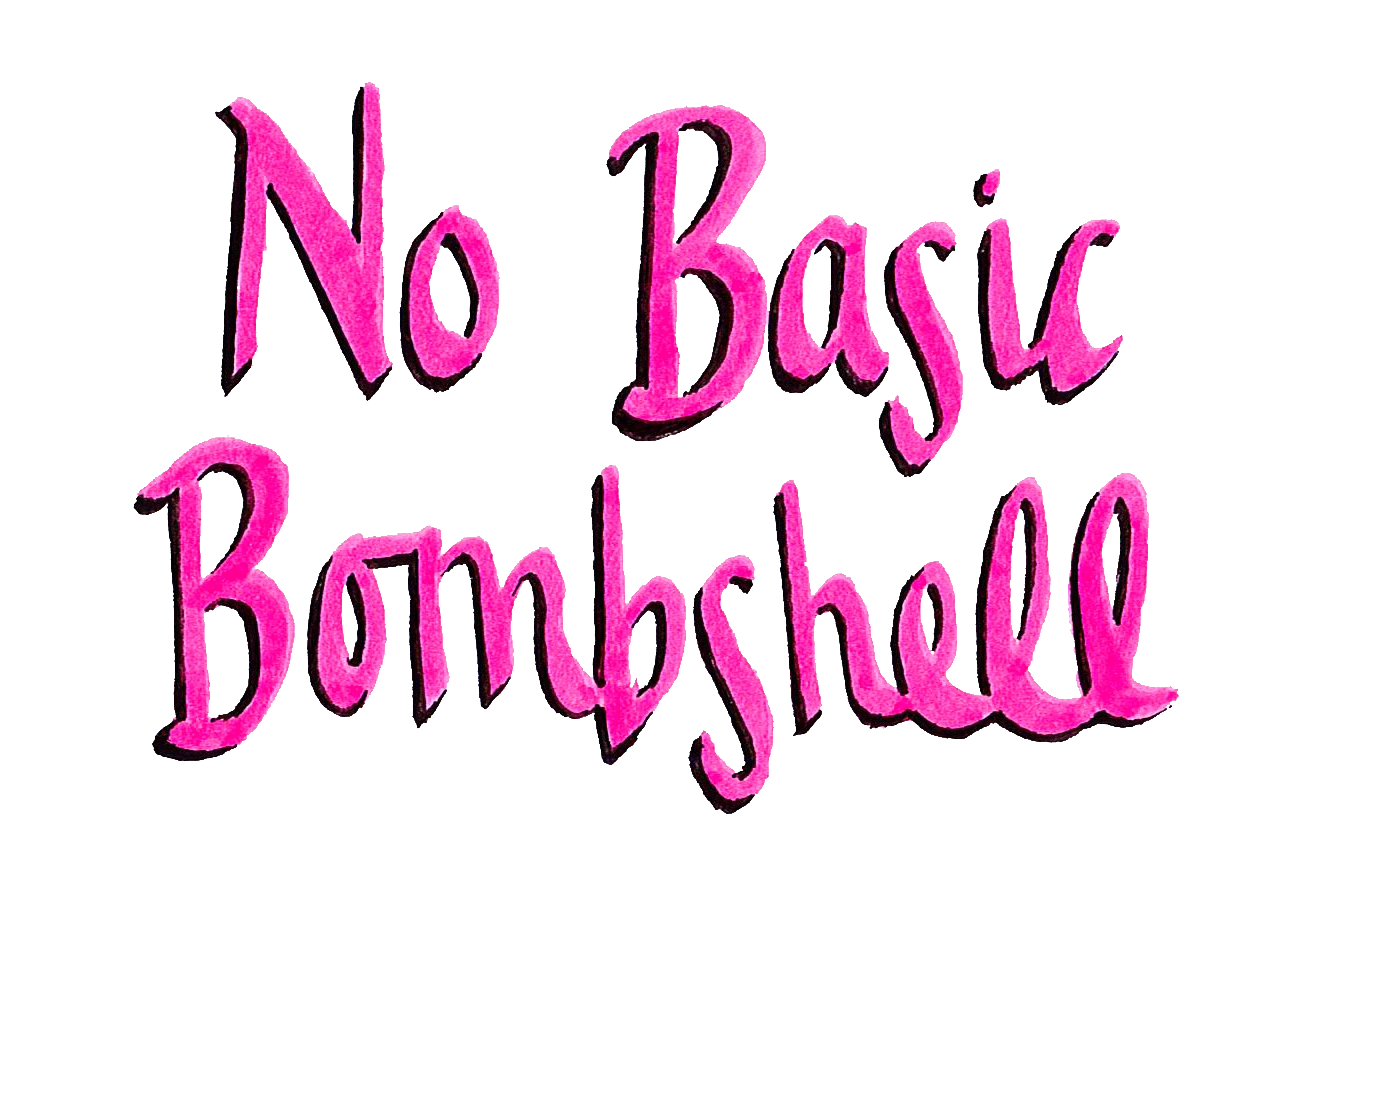 NO BASIC BOMBSHELL